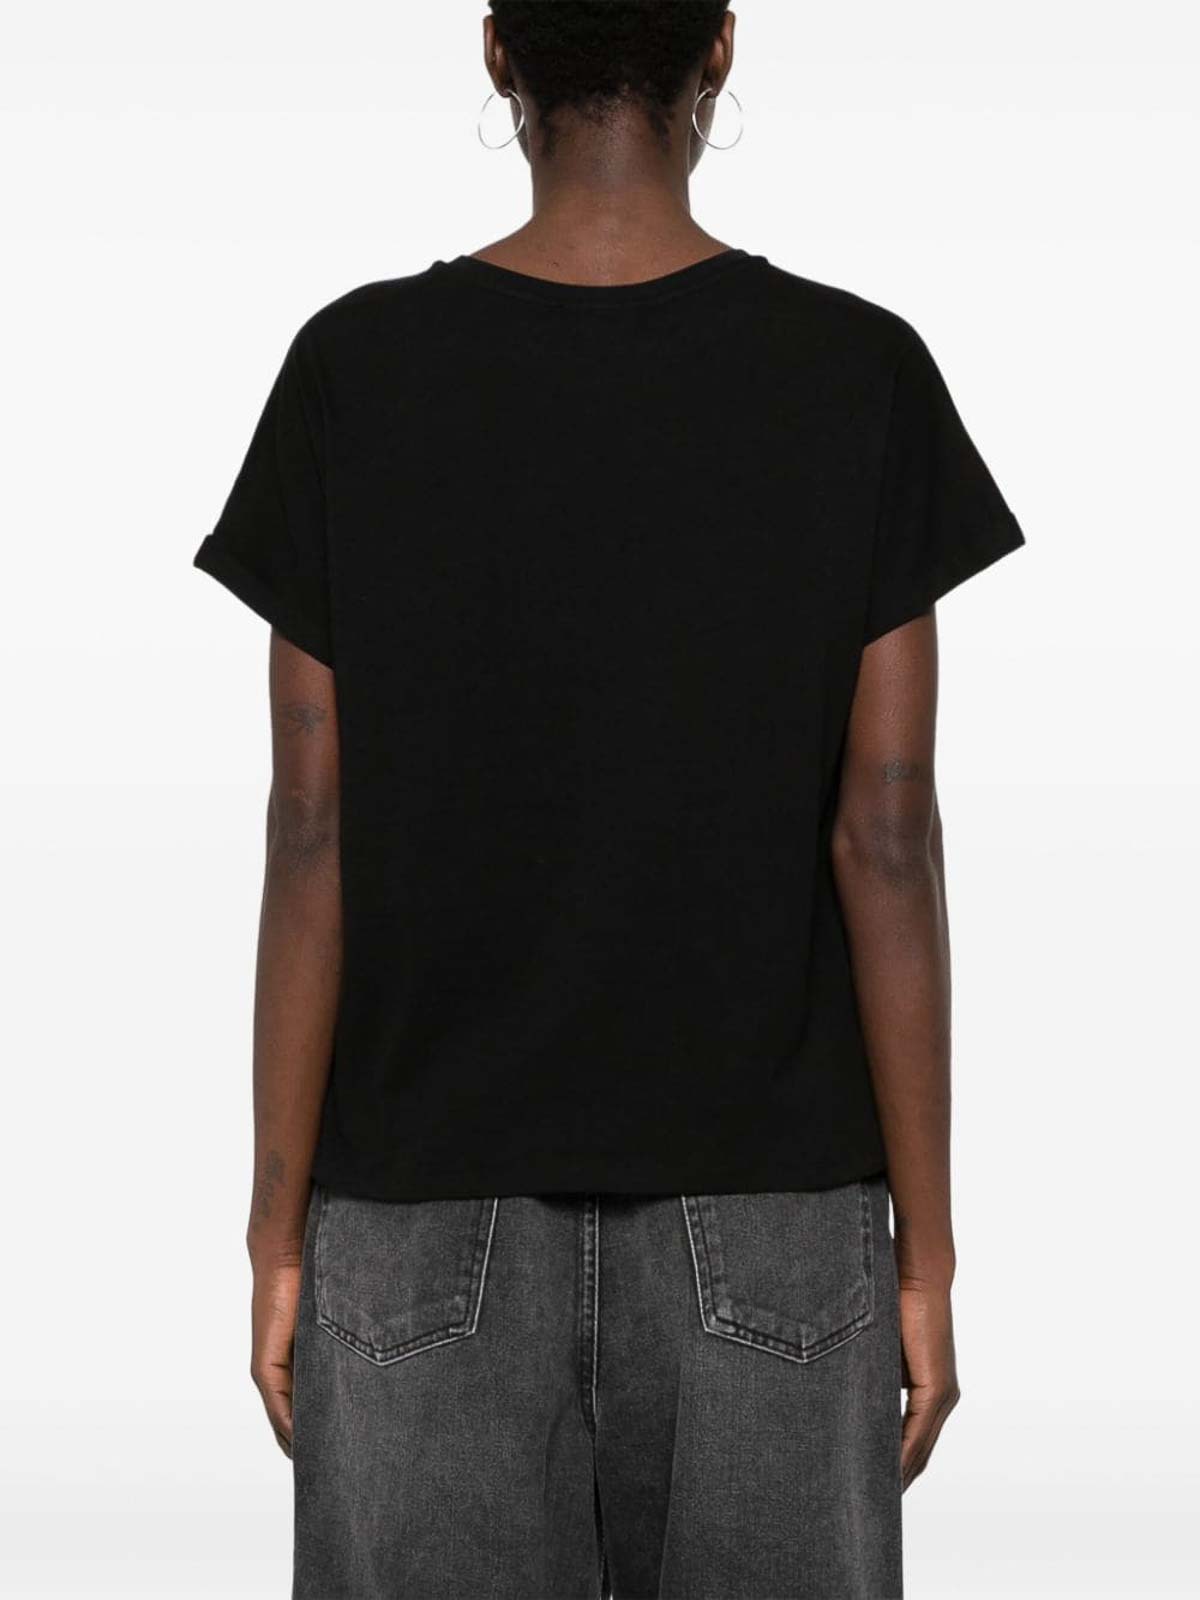 Shop Twinset Camiseta - Negro In Black